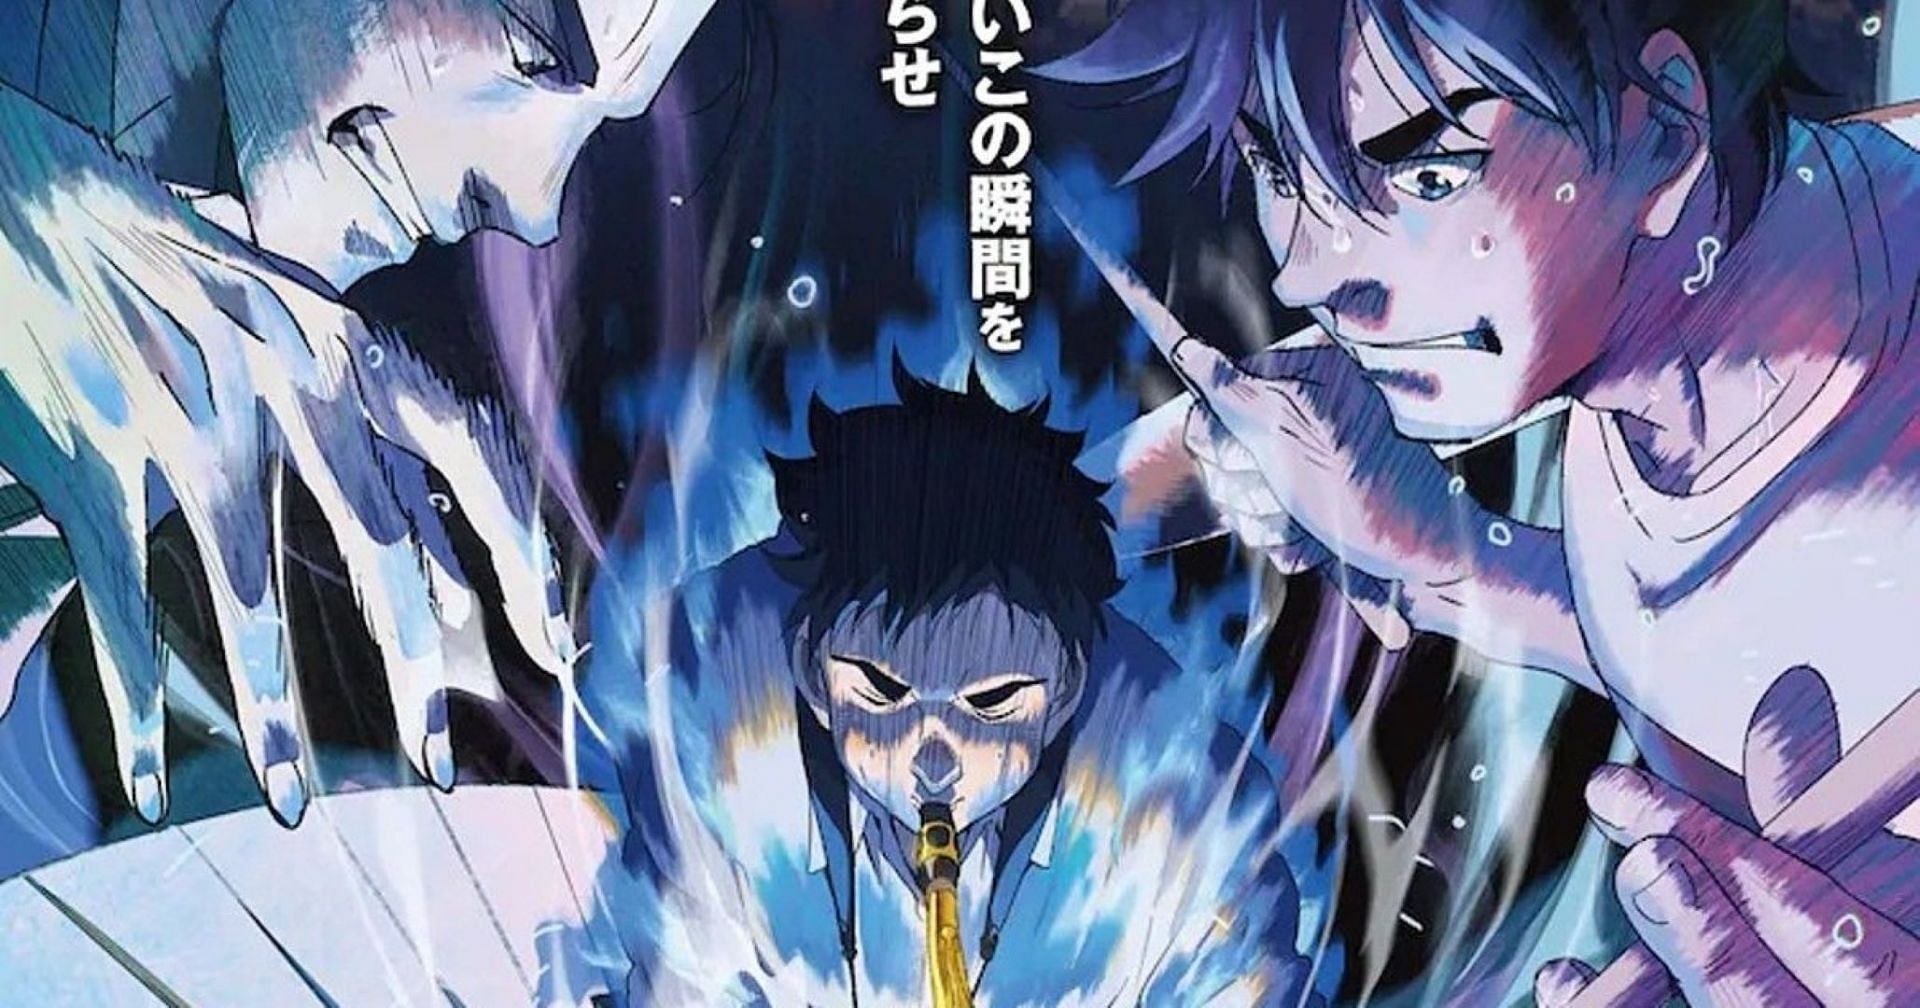 Blue Giant manga (Image via Shinichi Ishizuka/Shogakukan)